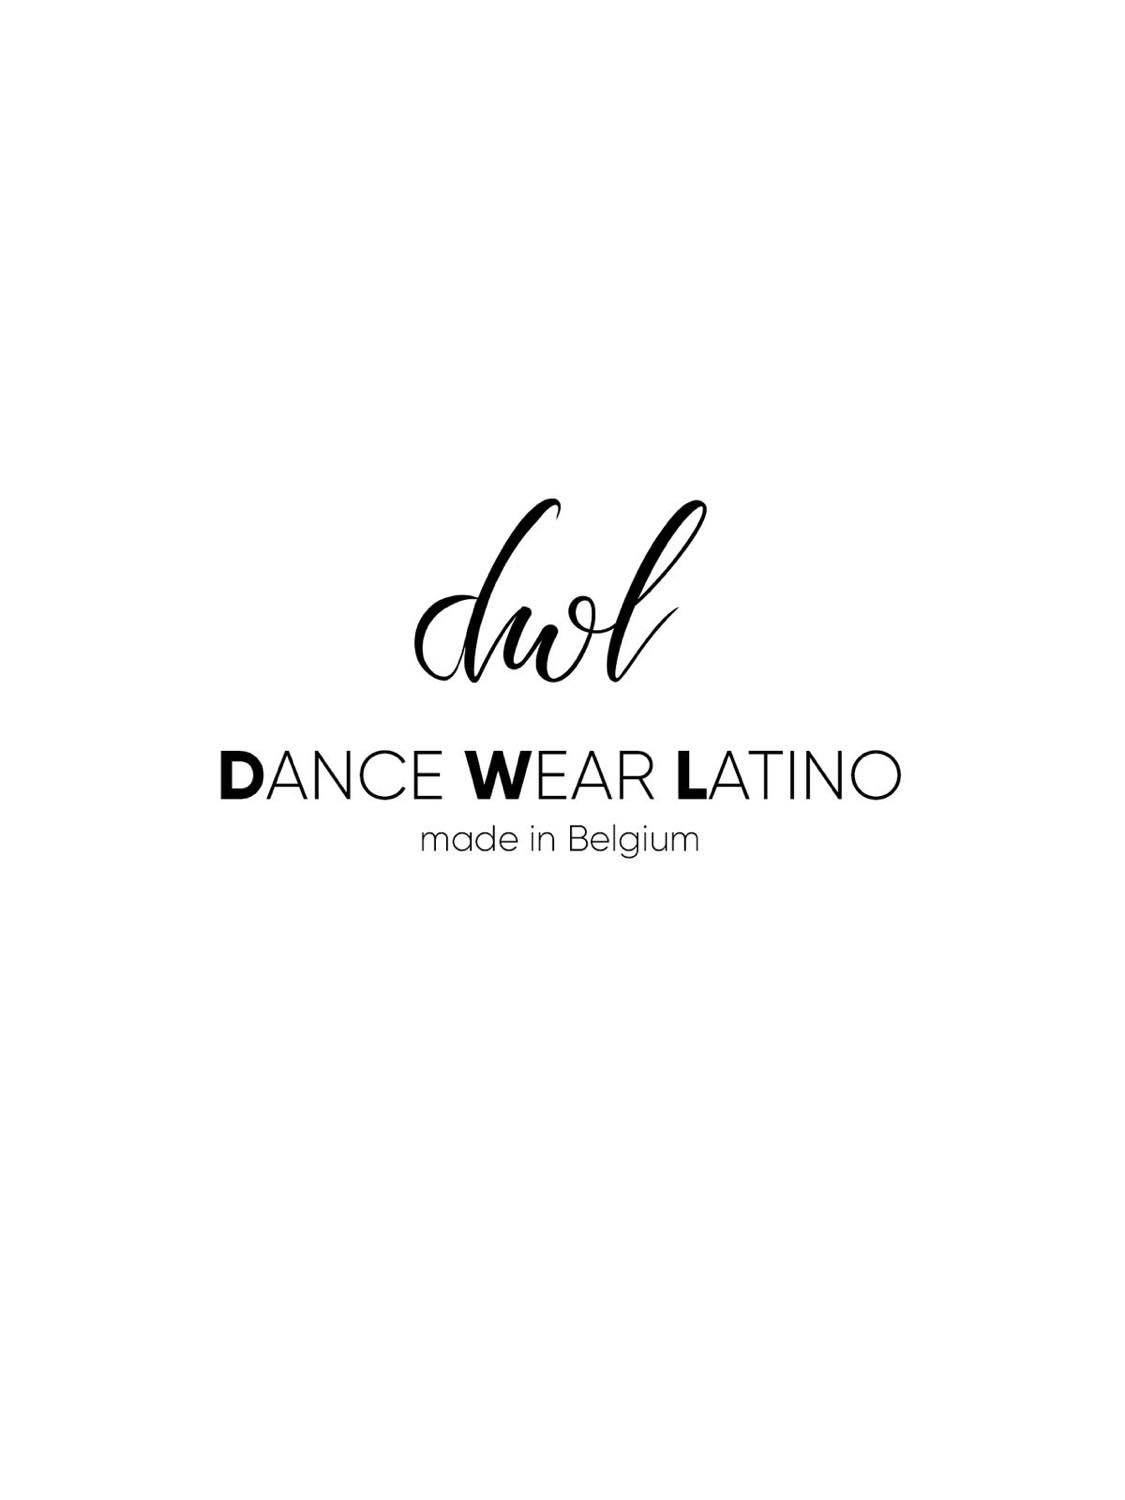 Dance Wear Latino logo